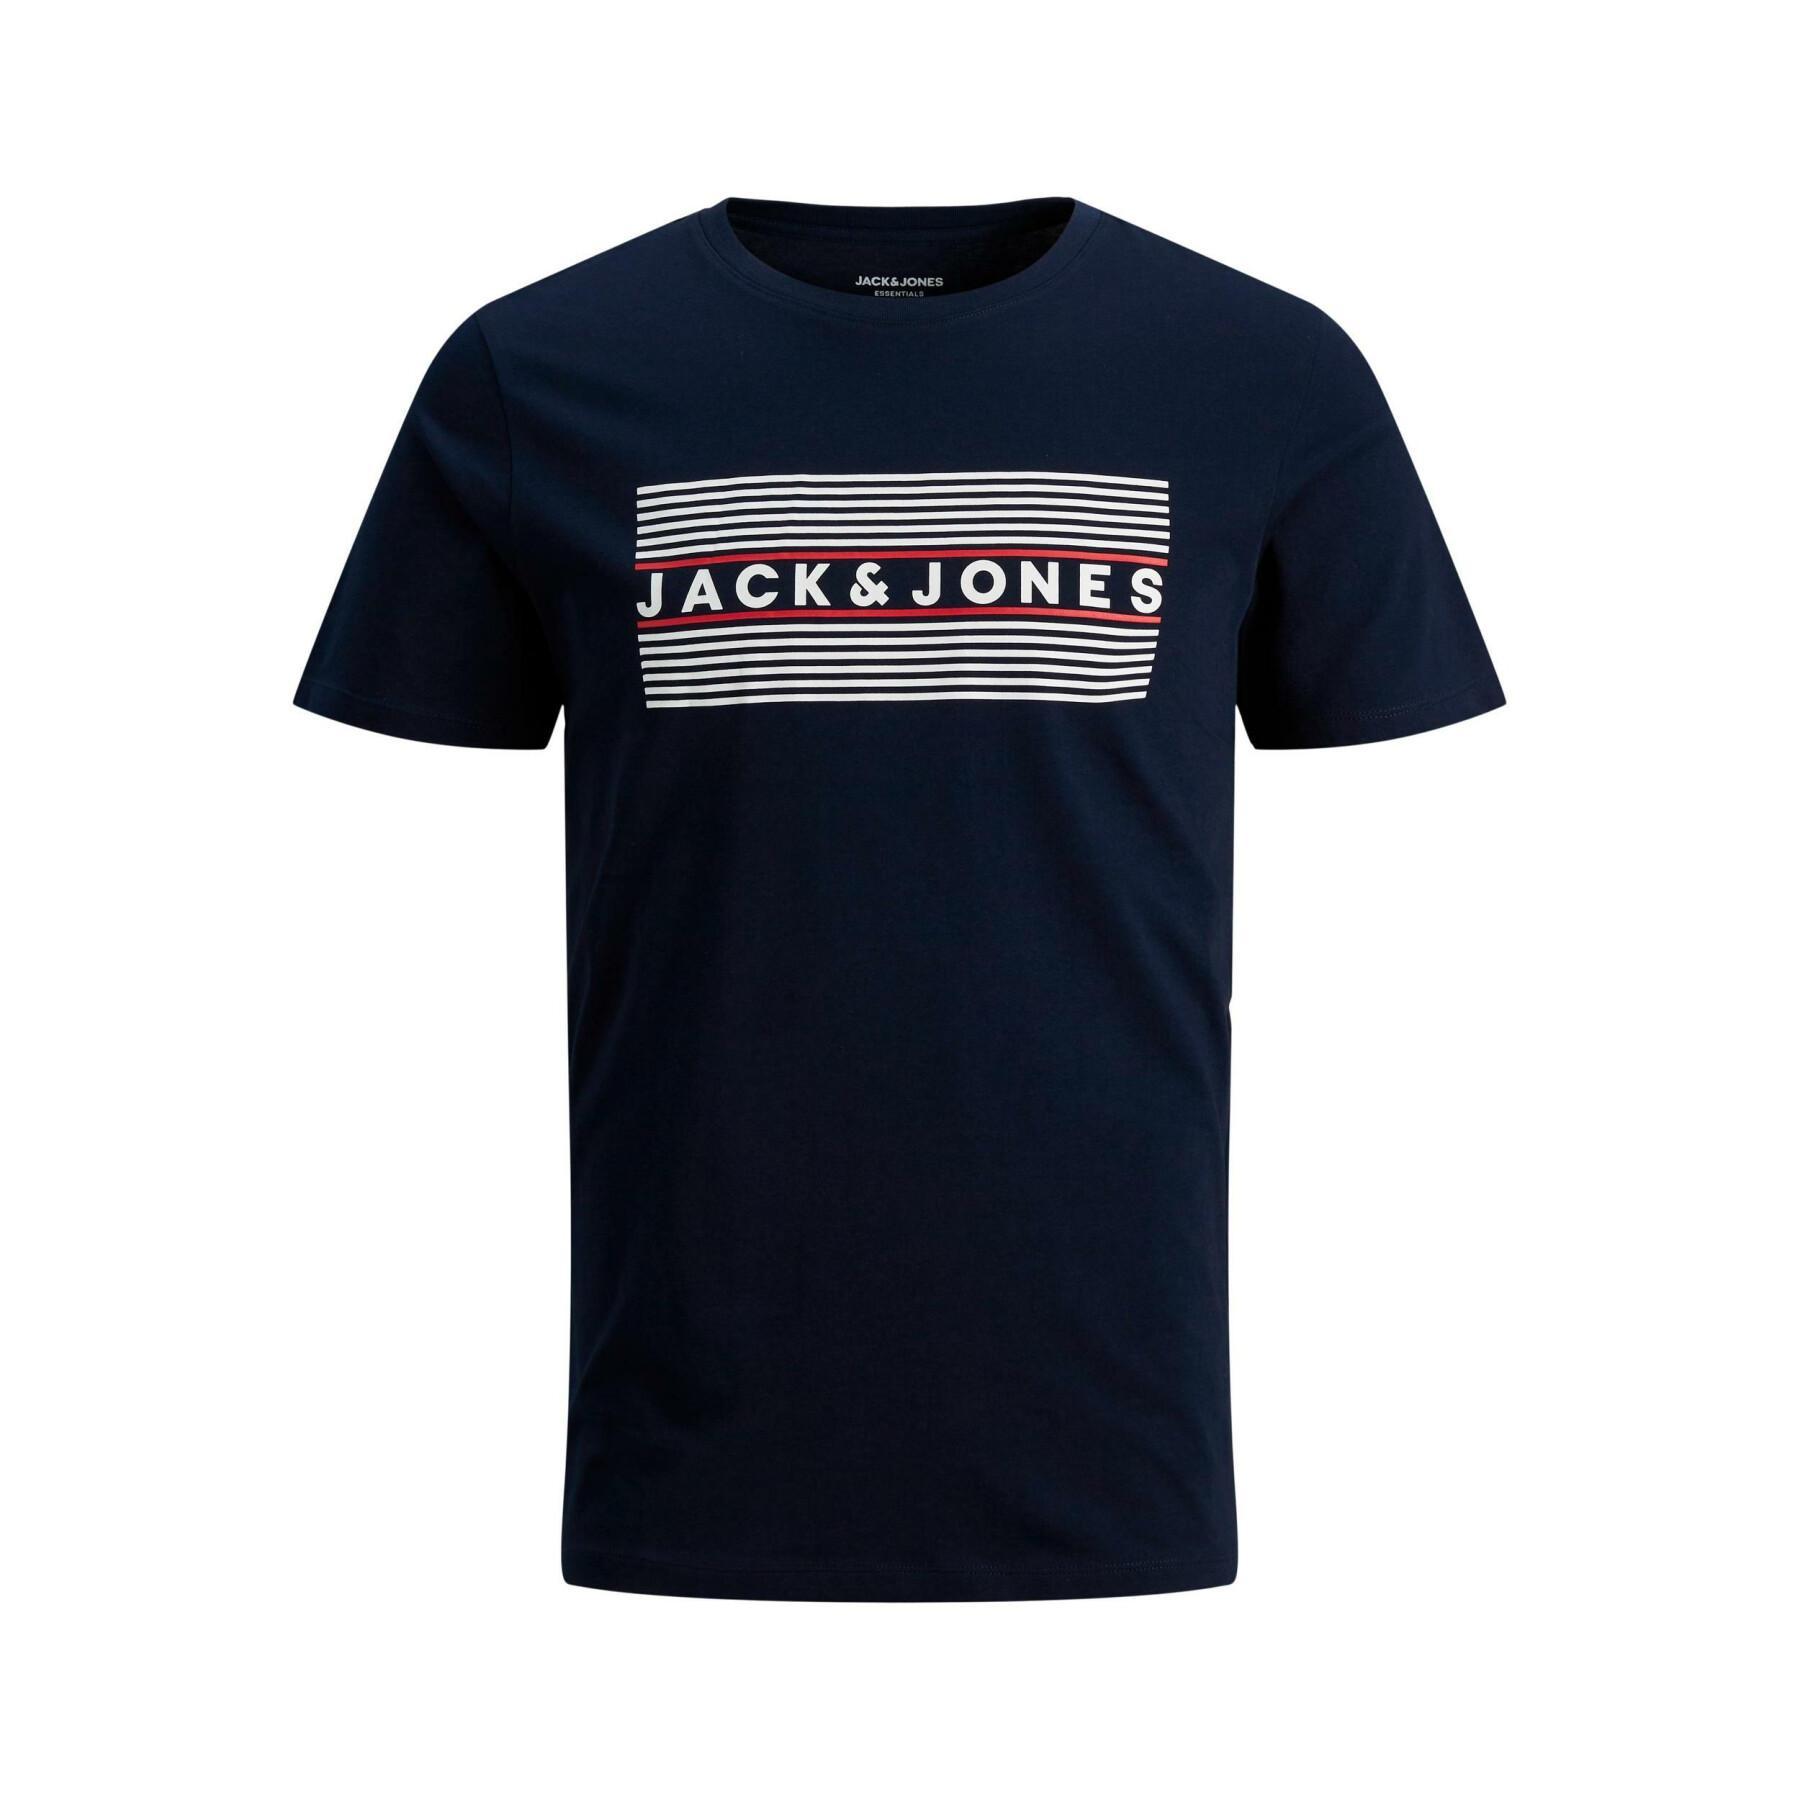 Kinder-T-shirt Jack & Jones corp logo